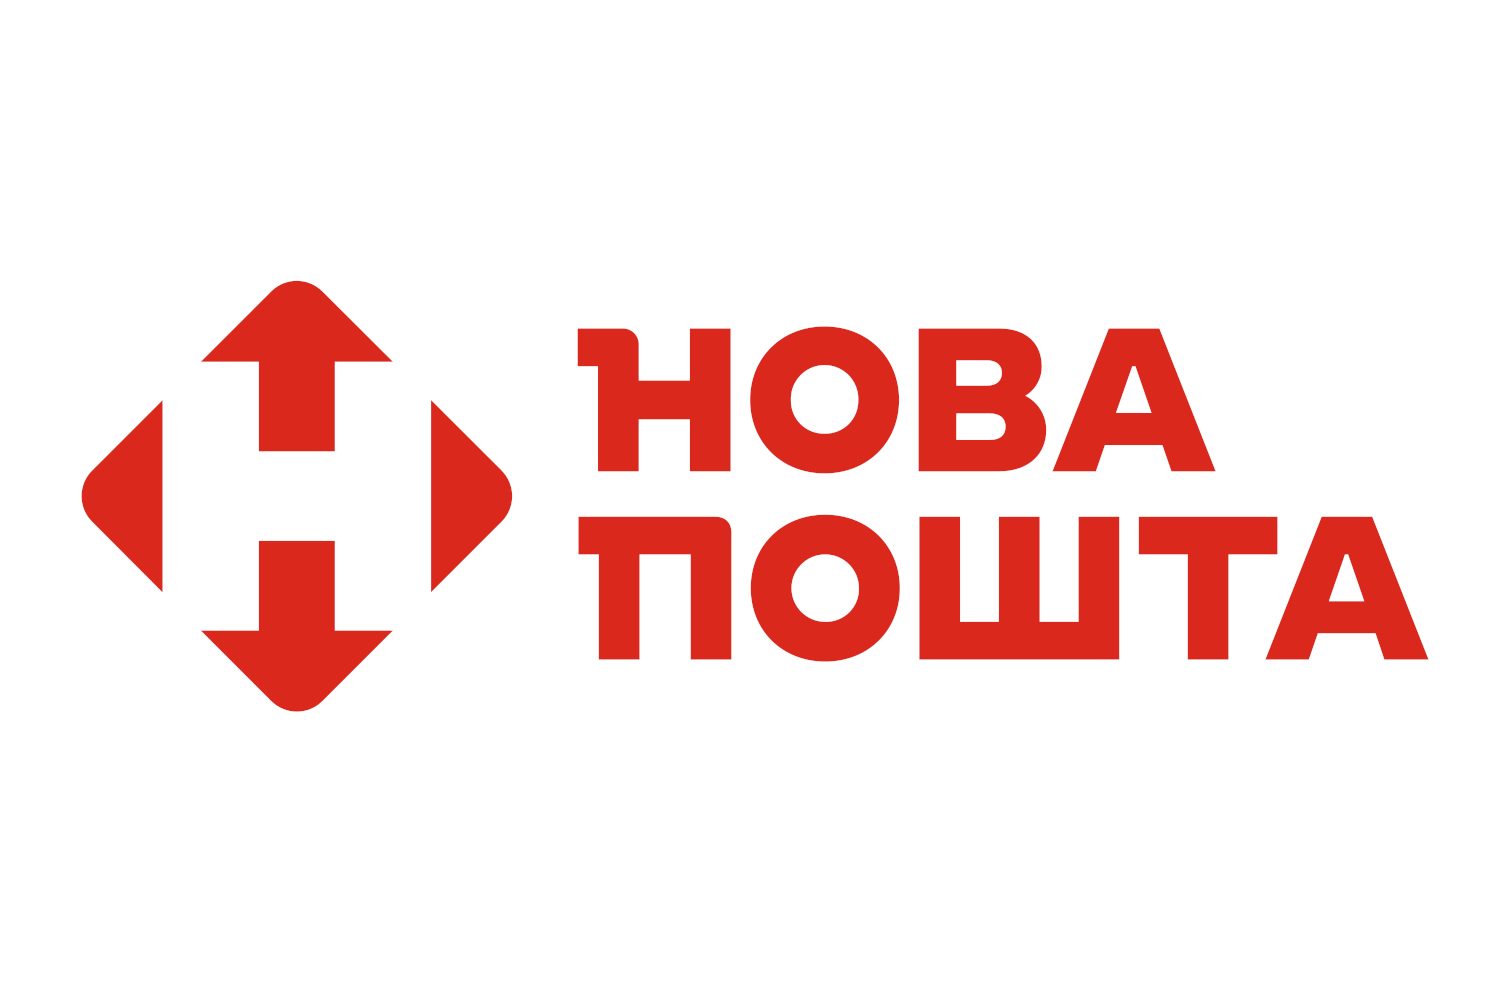 Nowa poczta obniżyła opłatę za wysyłanie przekazów na terenie Ukrainy